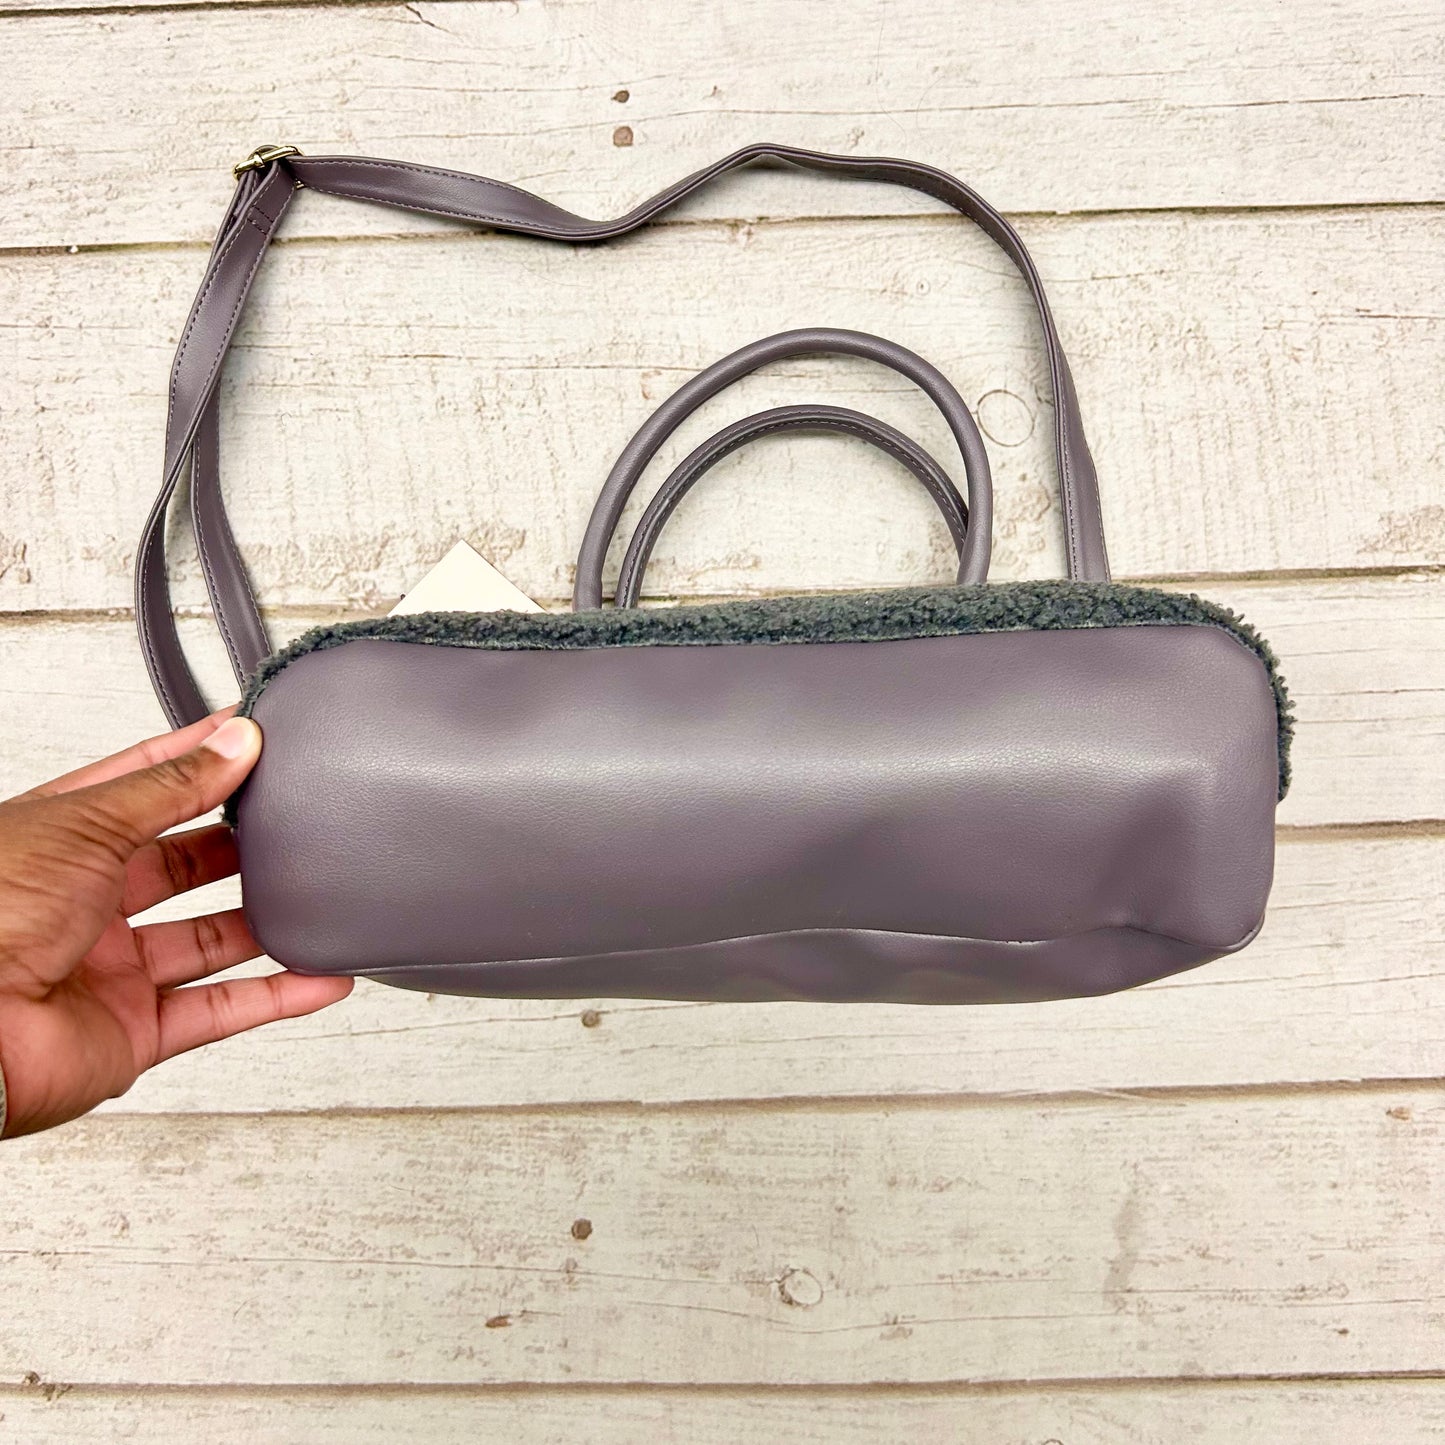 Handbag By Juicy Couture  Size: Medium